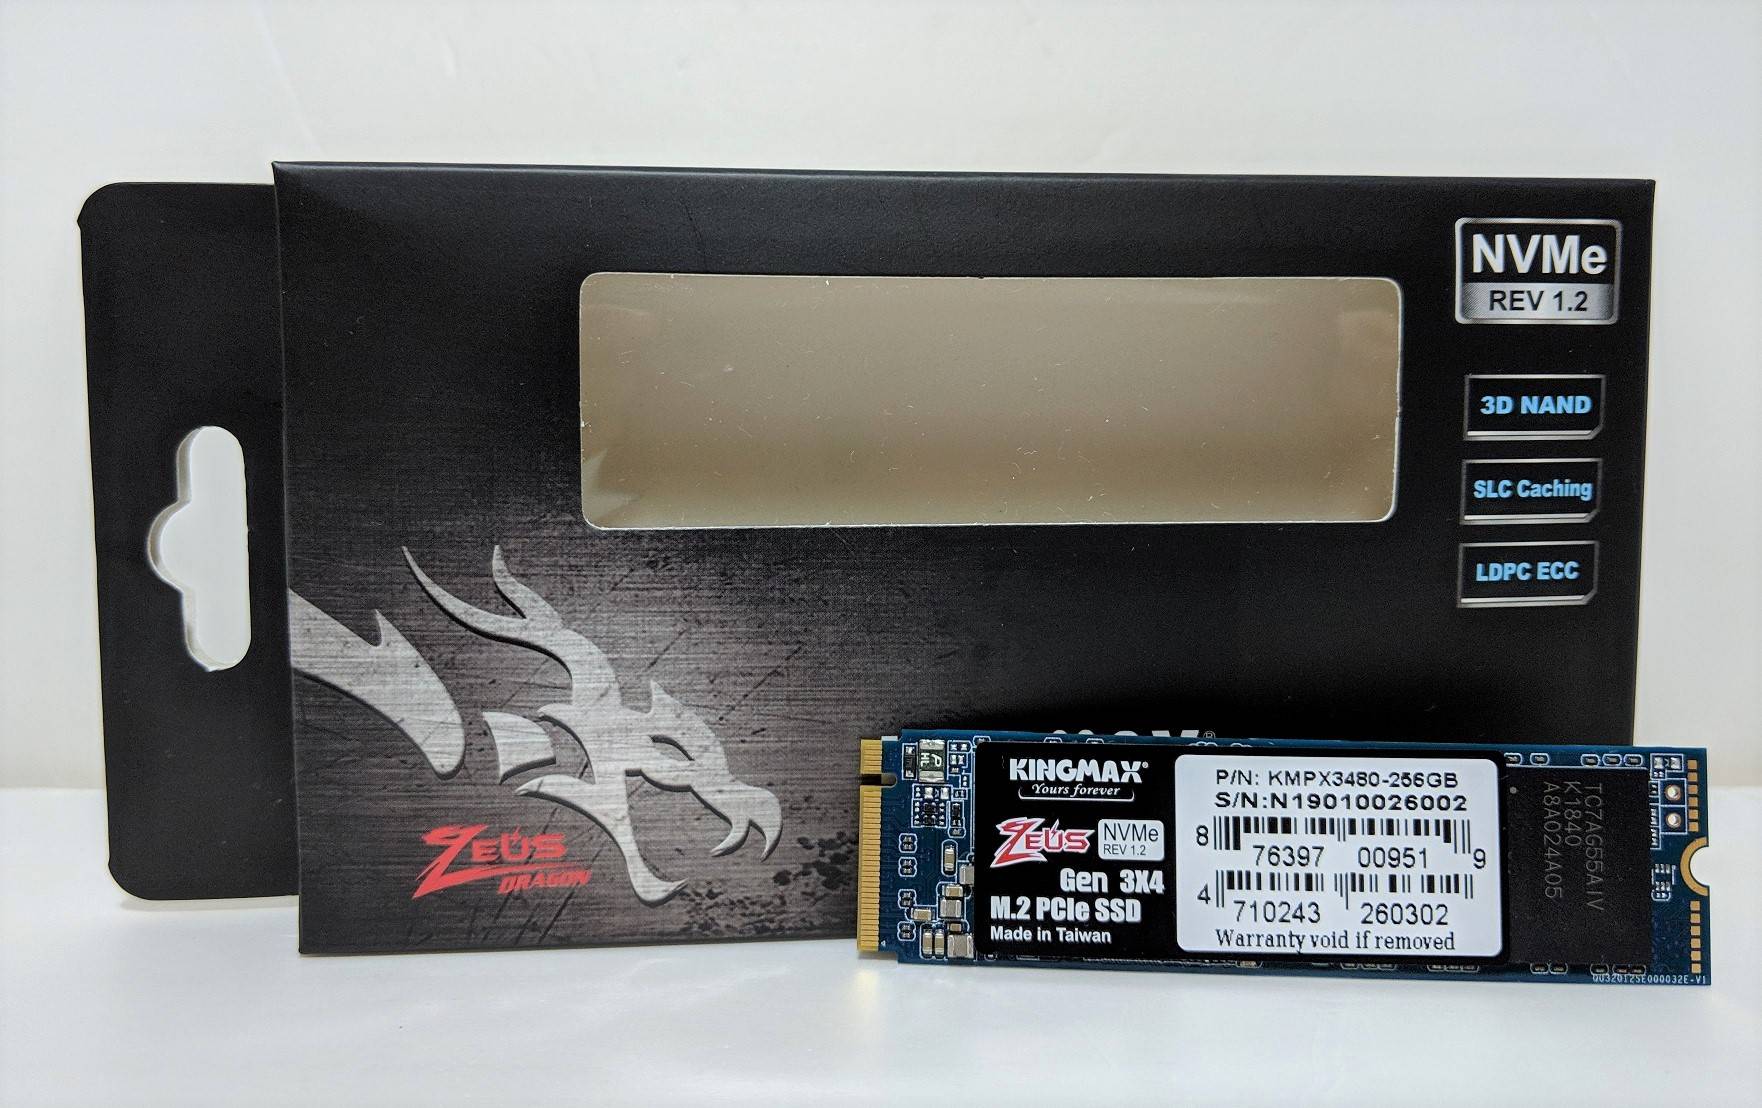 KINGMAX Zeus Dragon PX3480 NVMe PCIe SSD